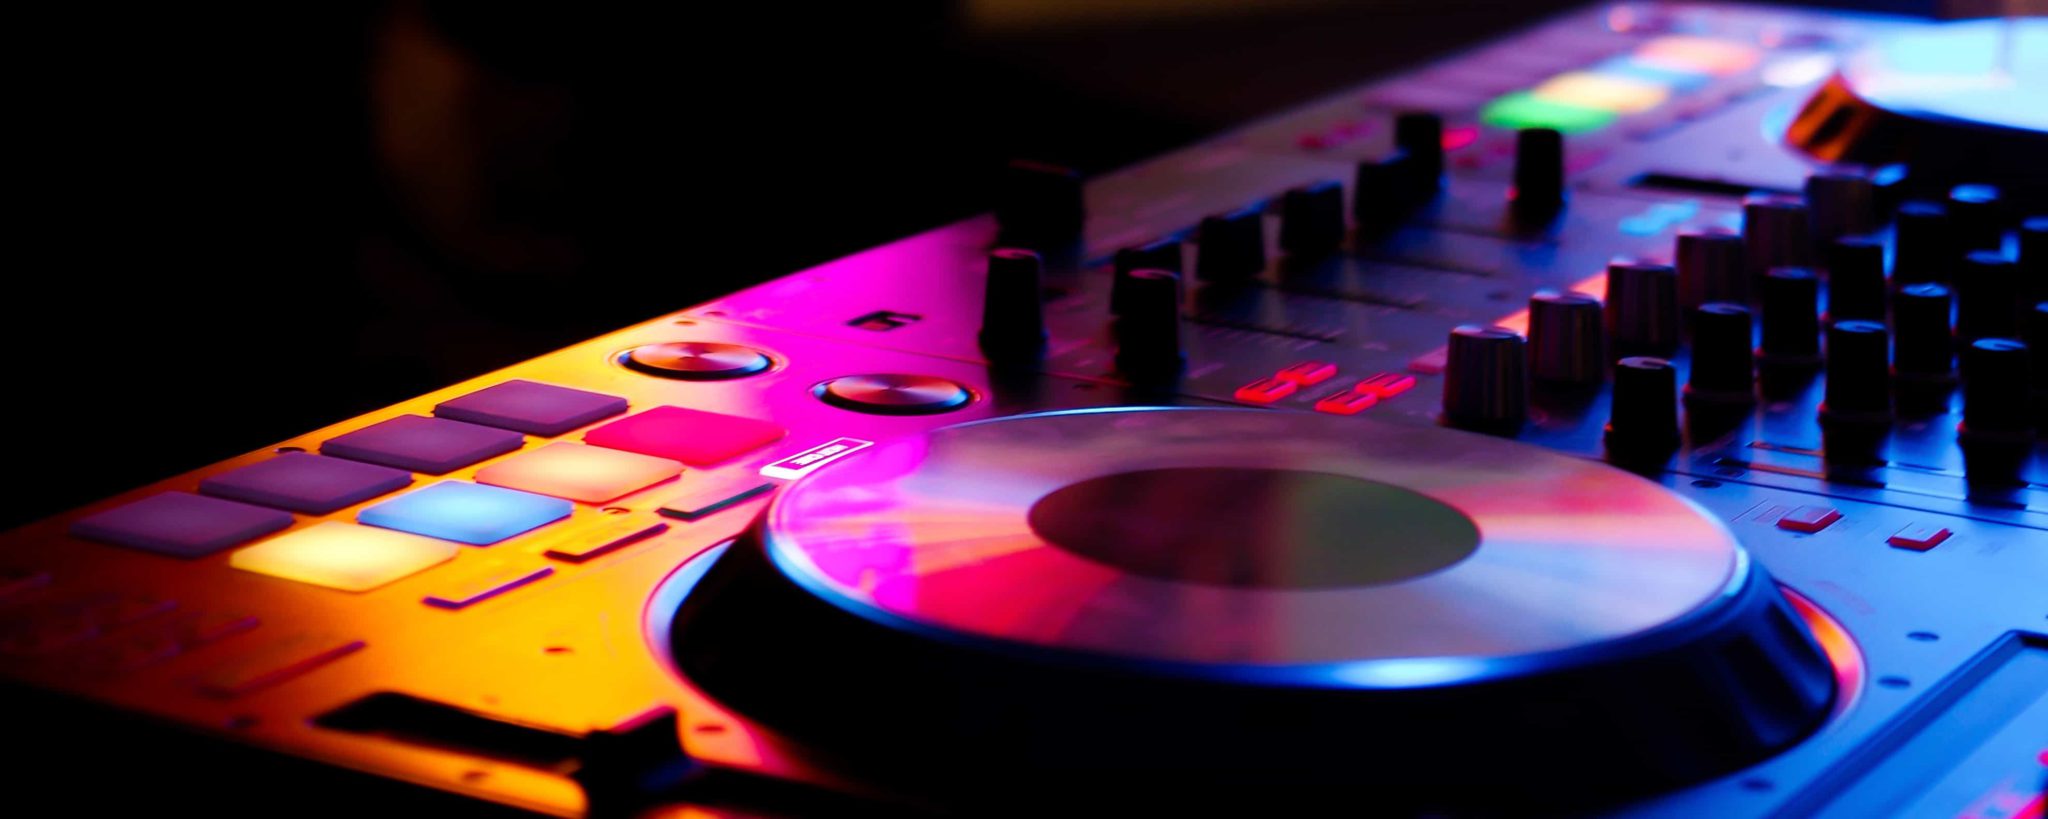 Mischpult mit Turn Table als Ausstattung eines professionellen Event-DJs